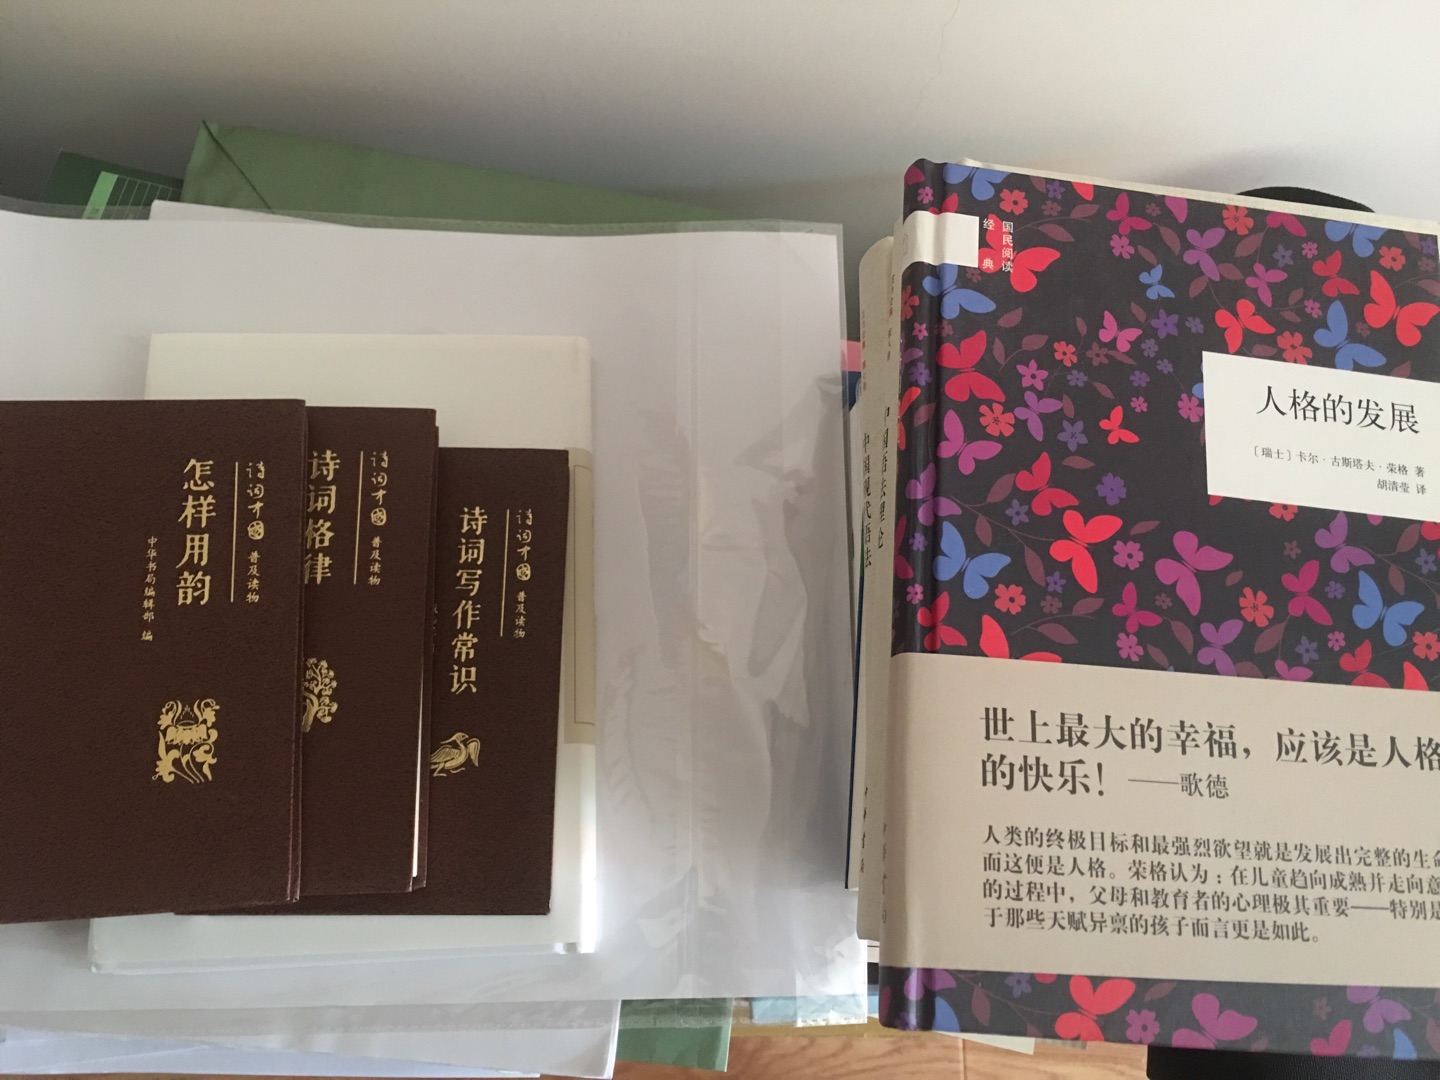 挺好的书，中华书局的这一套很经典，值得阅读～物流超好，十分满意